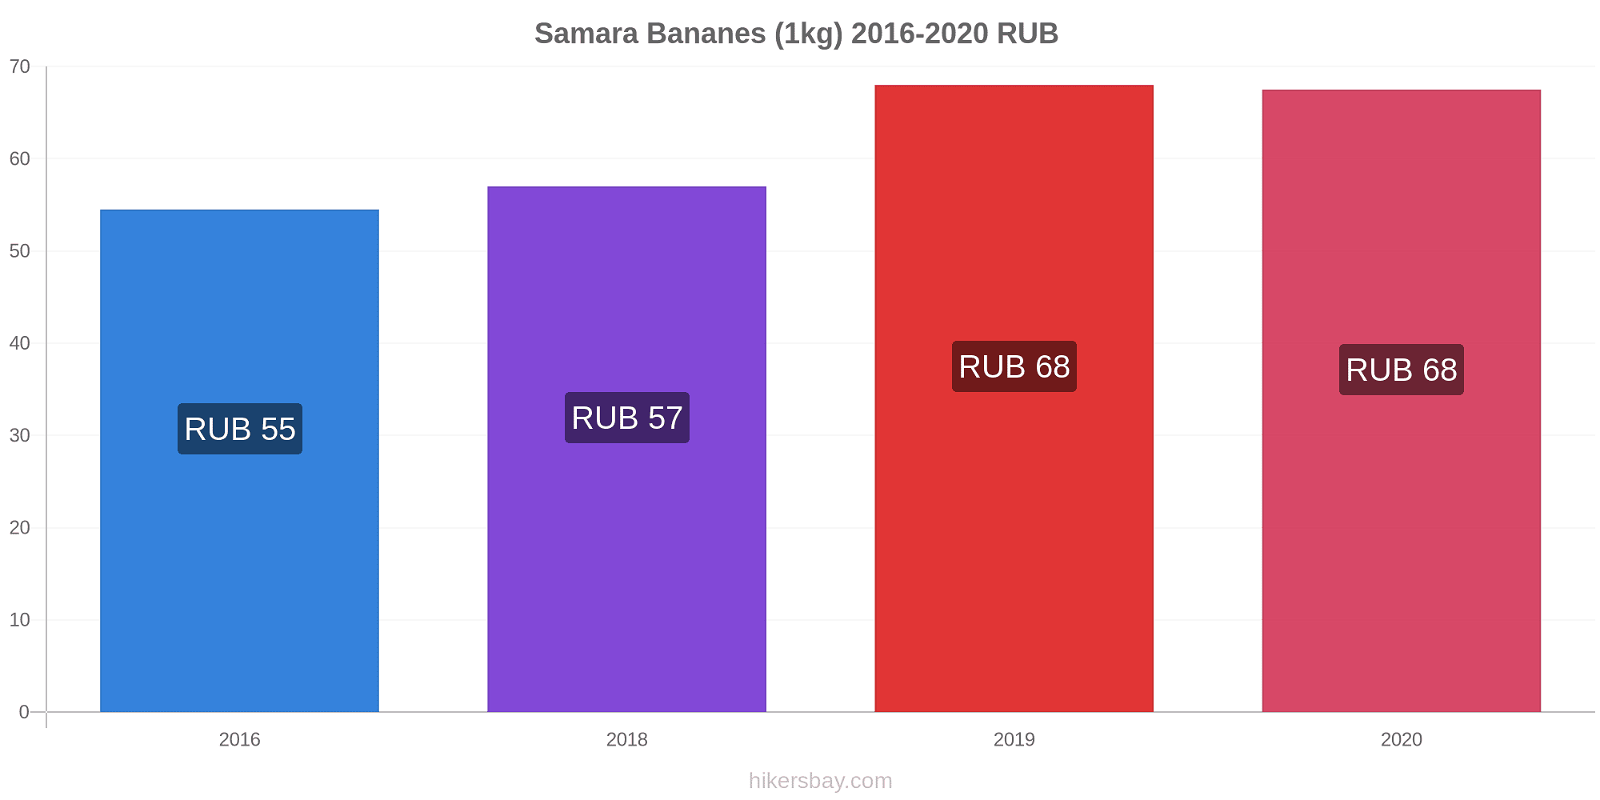 Samara changements de prix Bananes (1kg) hikersbay.com